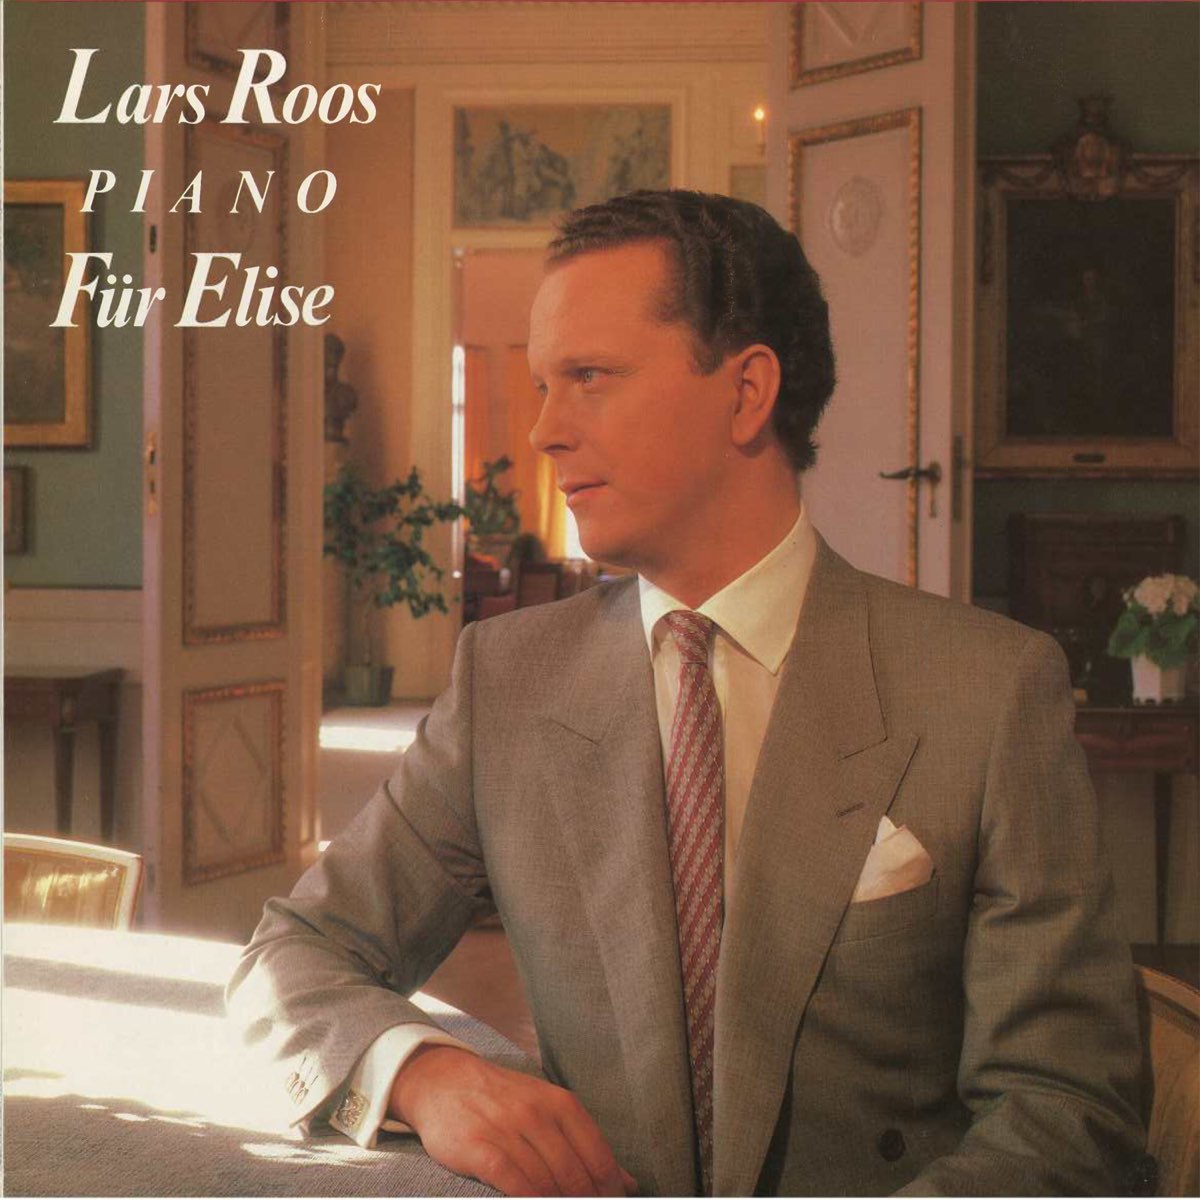 Für Elise by Lars Roos on Apple Music